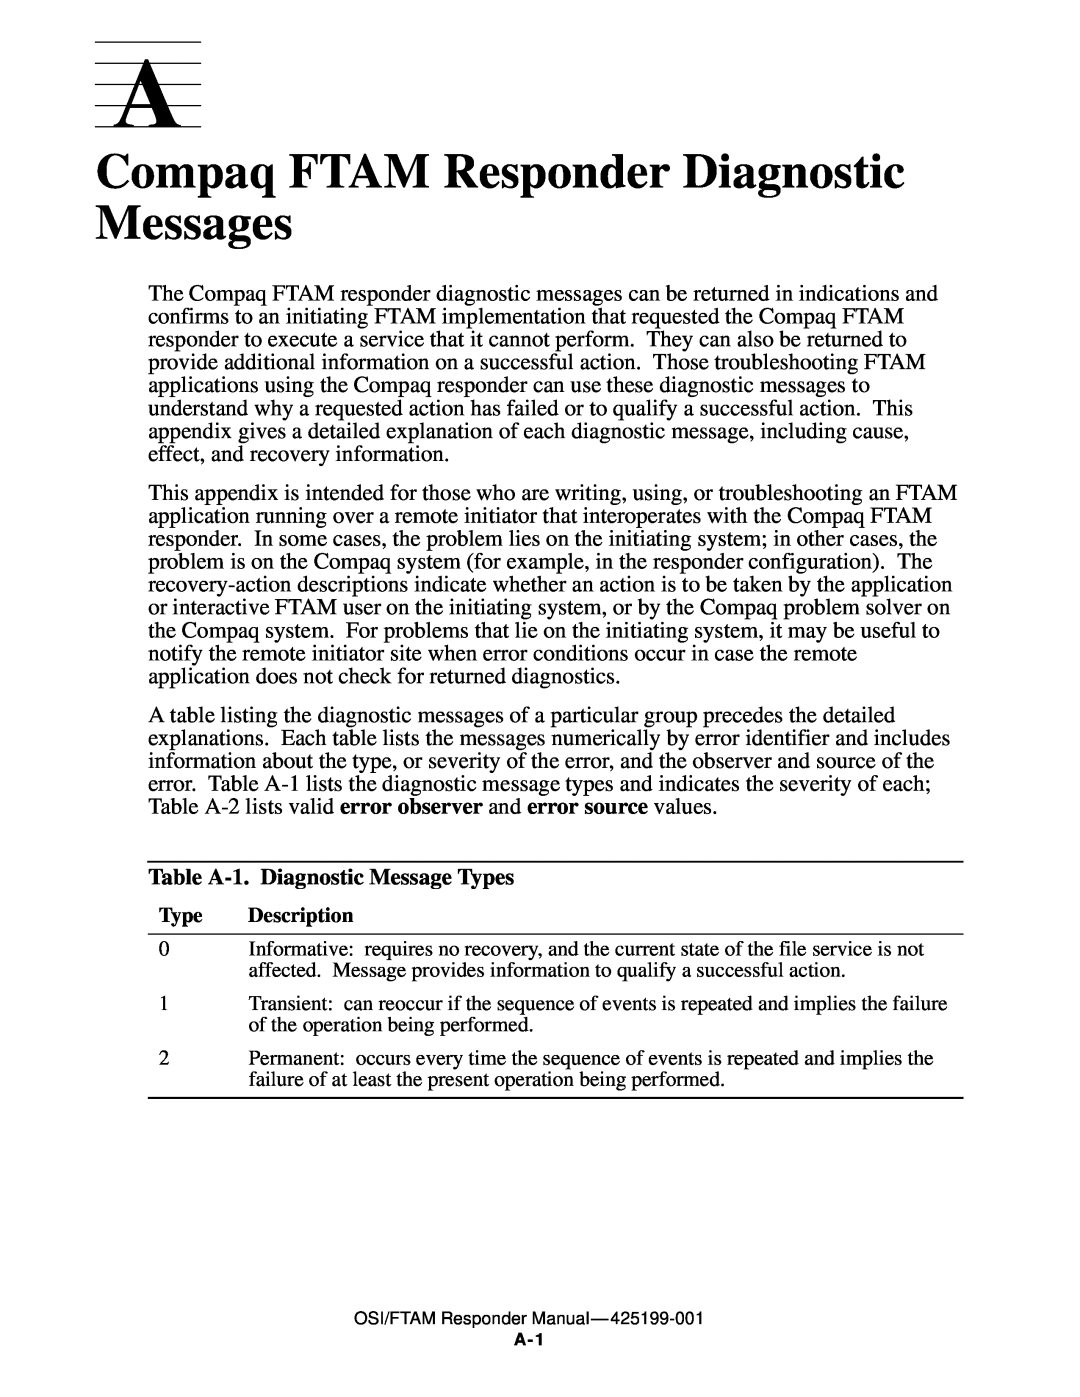 Compaq OSI/FTAM D43, OSI/APLMGR D43 manual Compaq FTAM Responder Diagnostic Messages, Table A-1. Diagnostic Message Types 